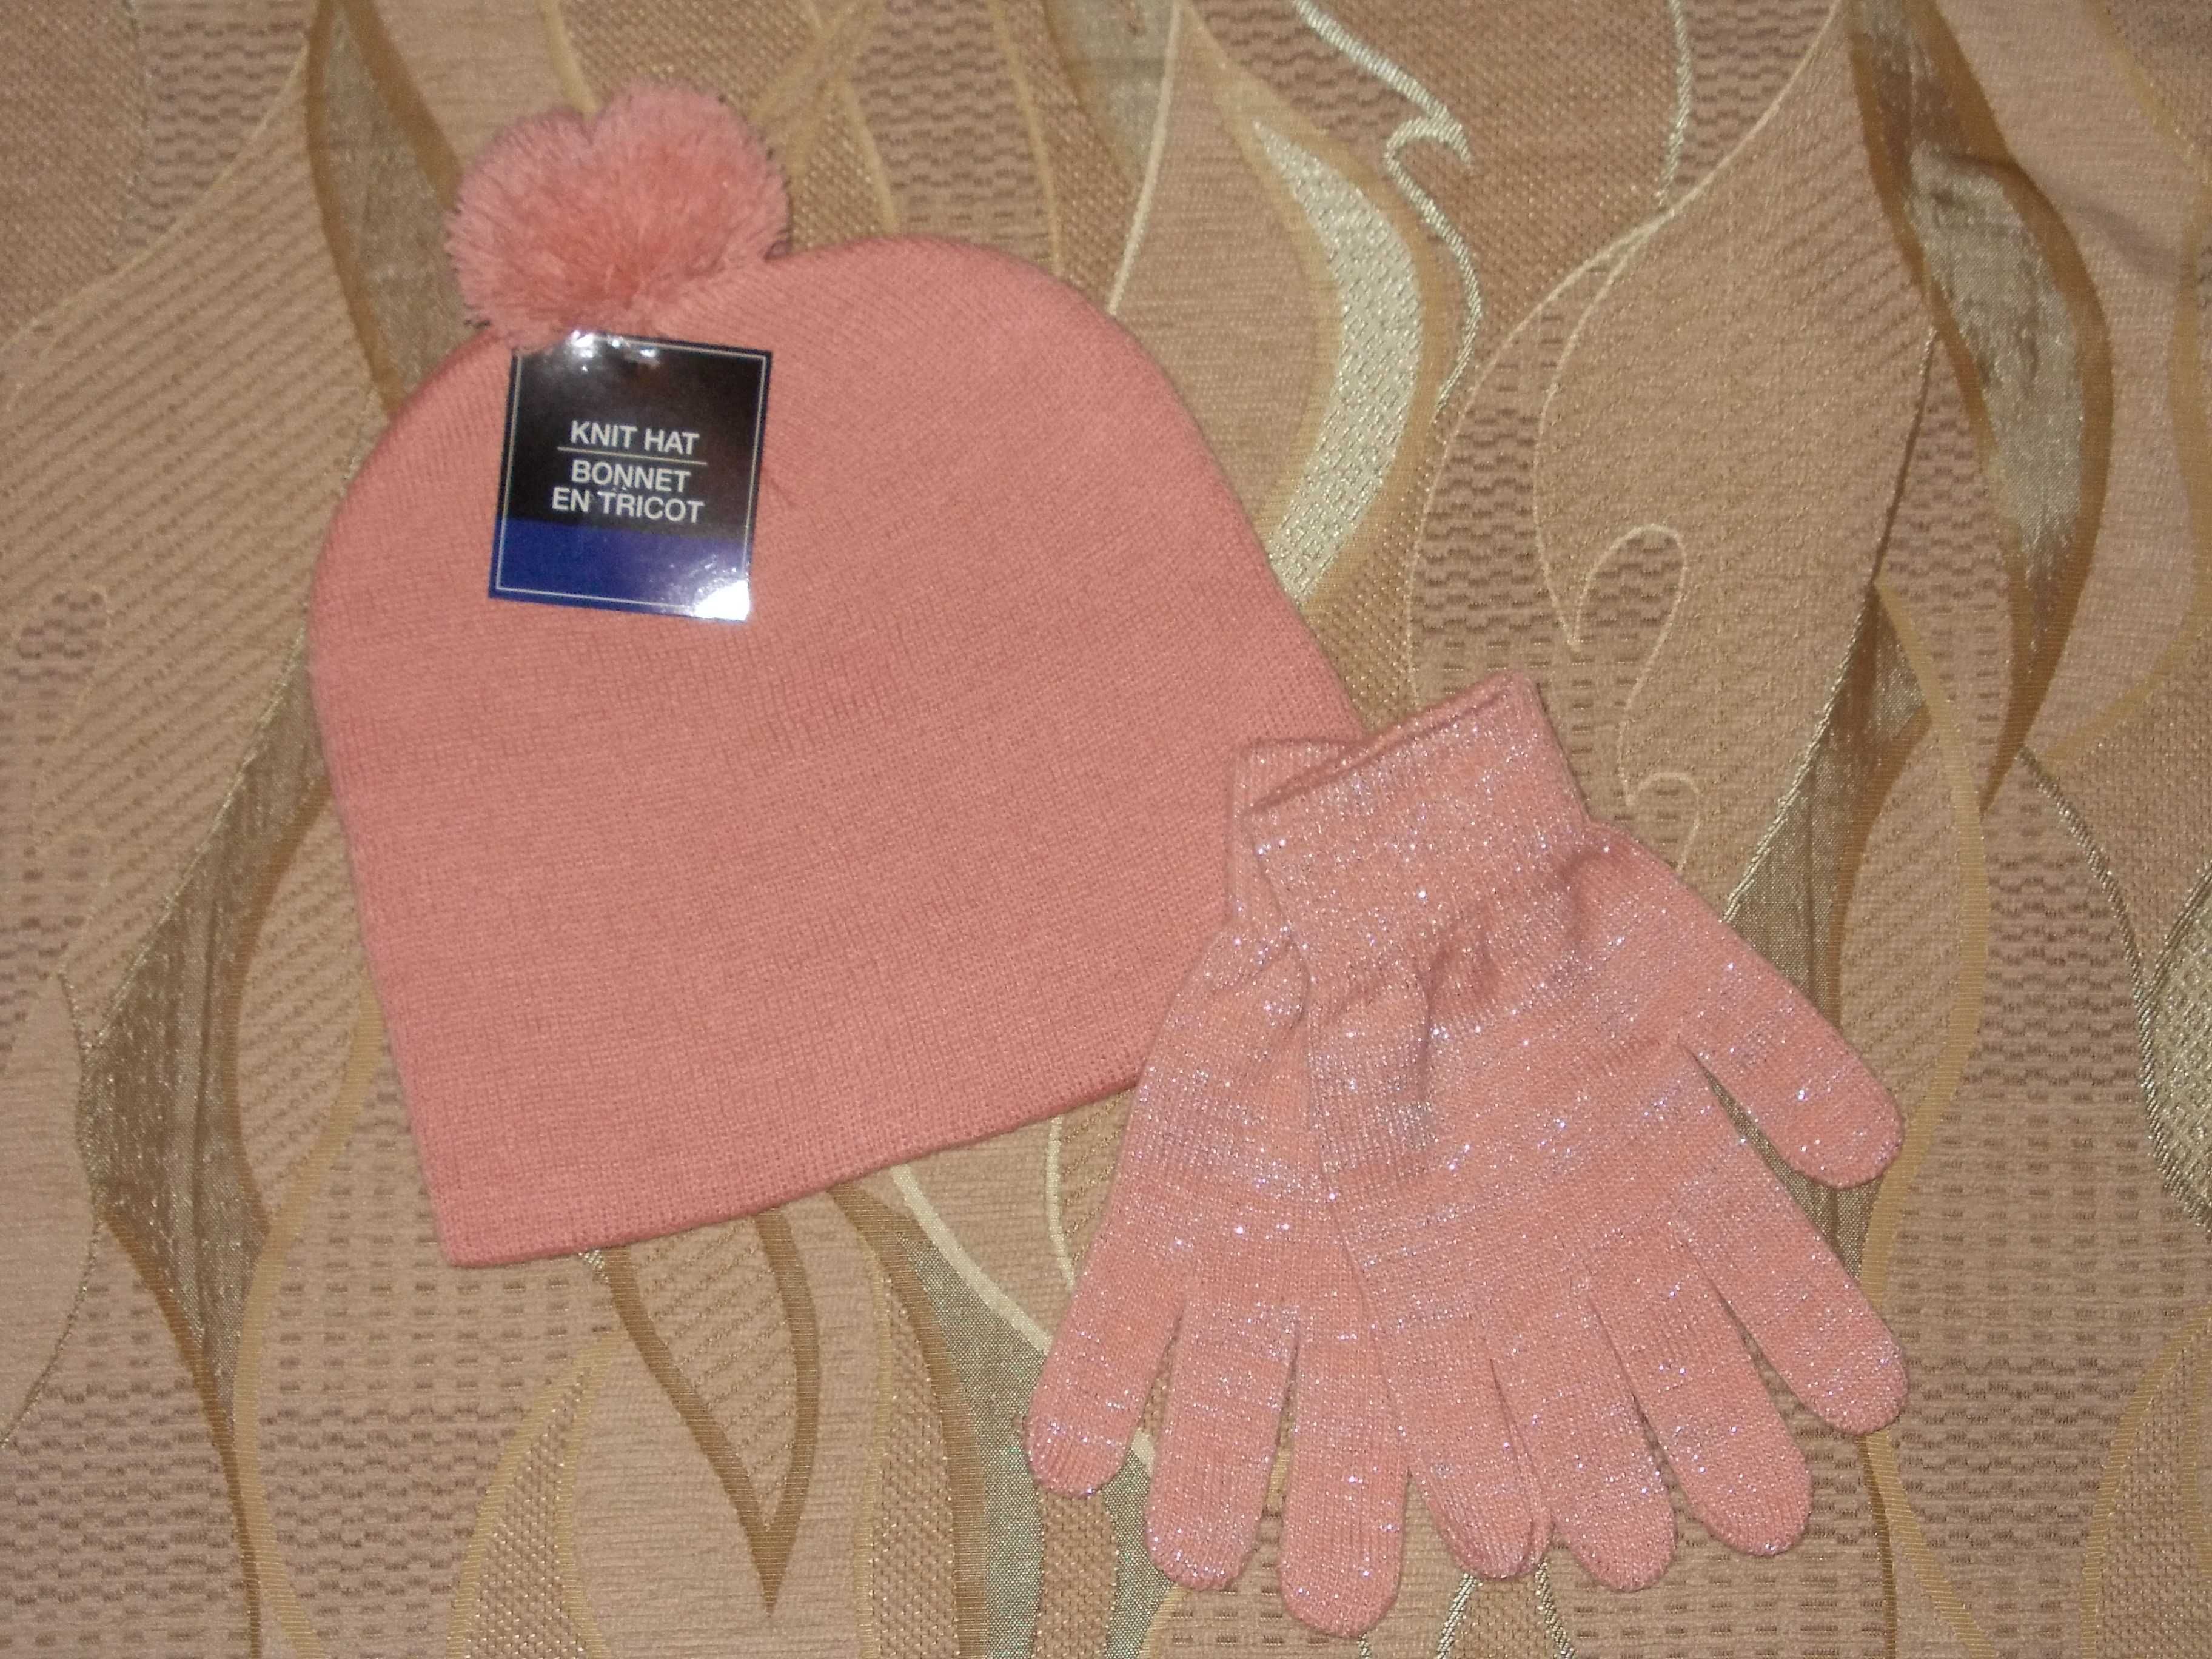 Набор шапка и перчатки для девочки